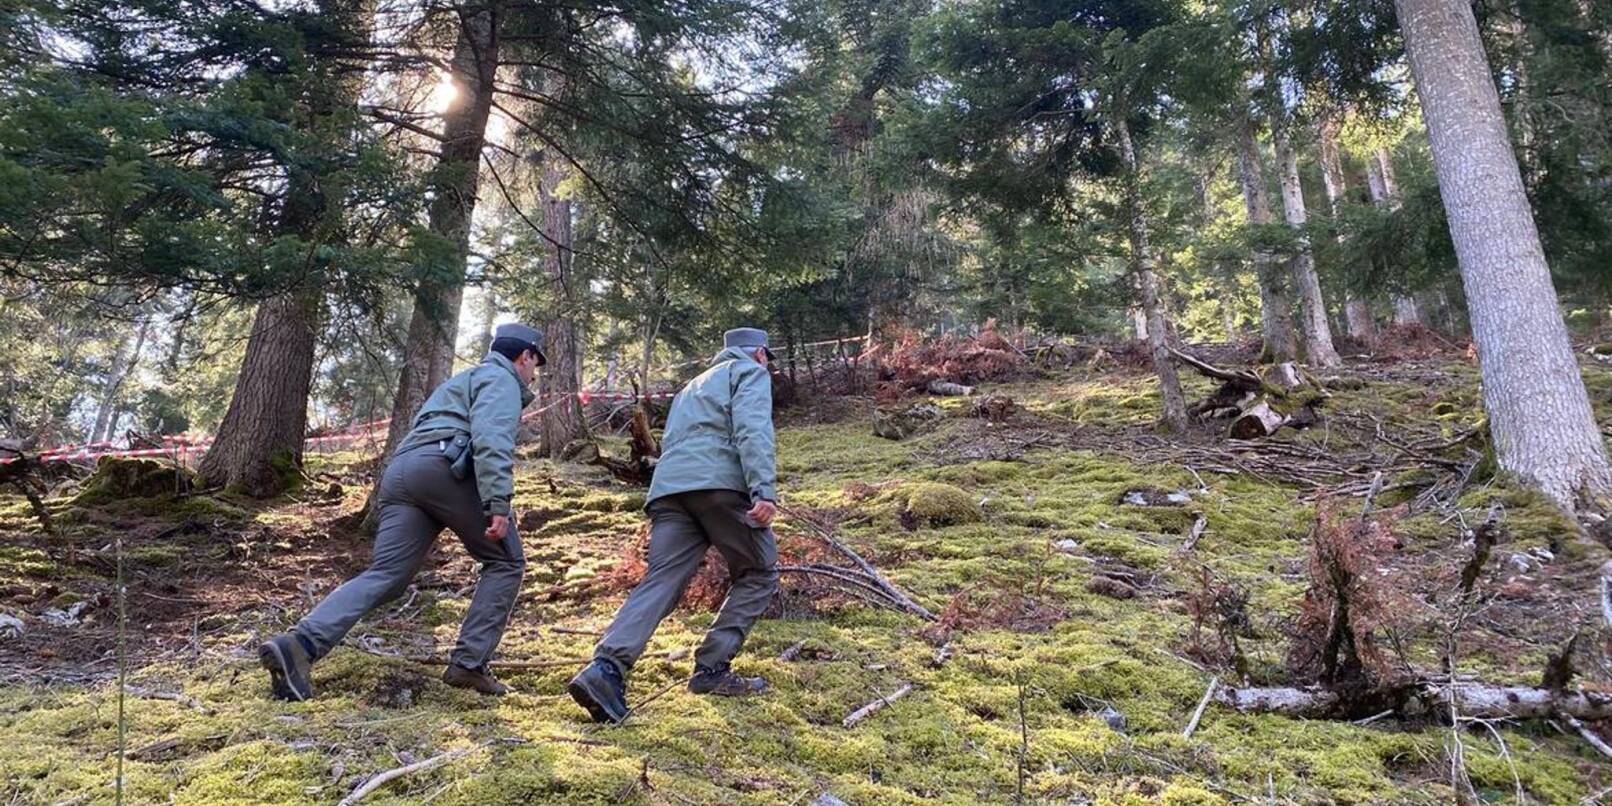 Polizeibeamte gehen durch den Wald vor einem mit Flatterband abgesperrten Bereich. In Norditalien ist ein Jogger möglicherweise von einem Bären angegriffen und getötet worden.